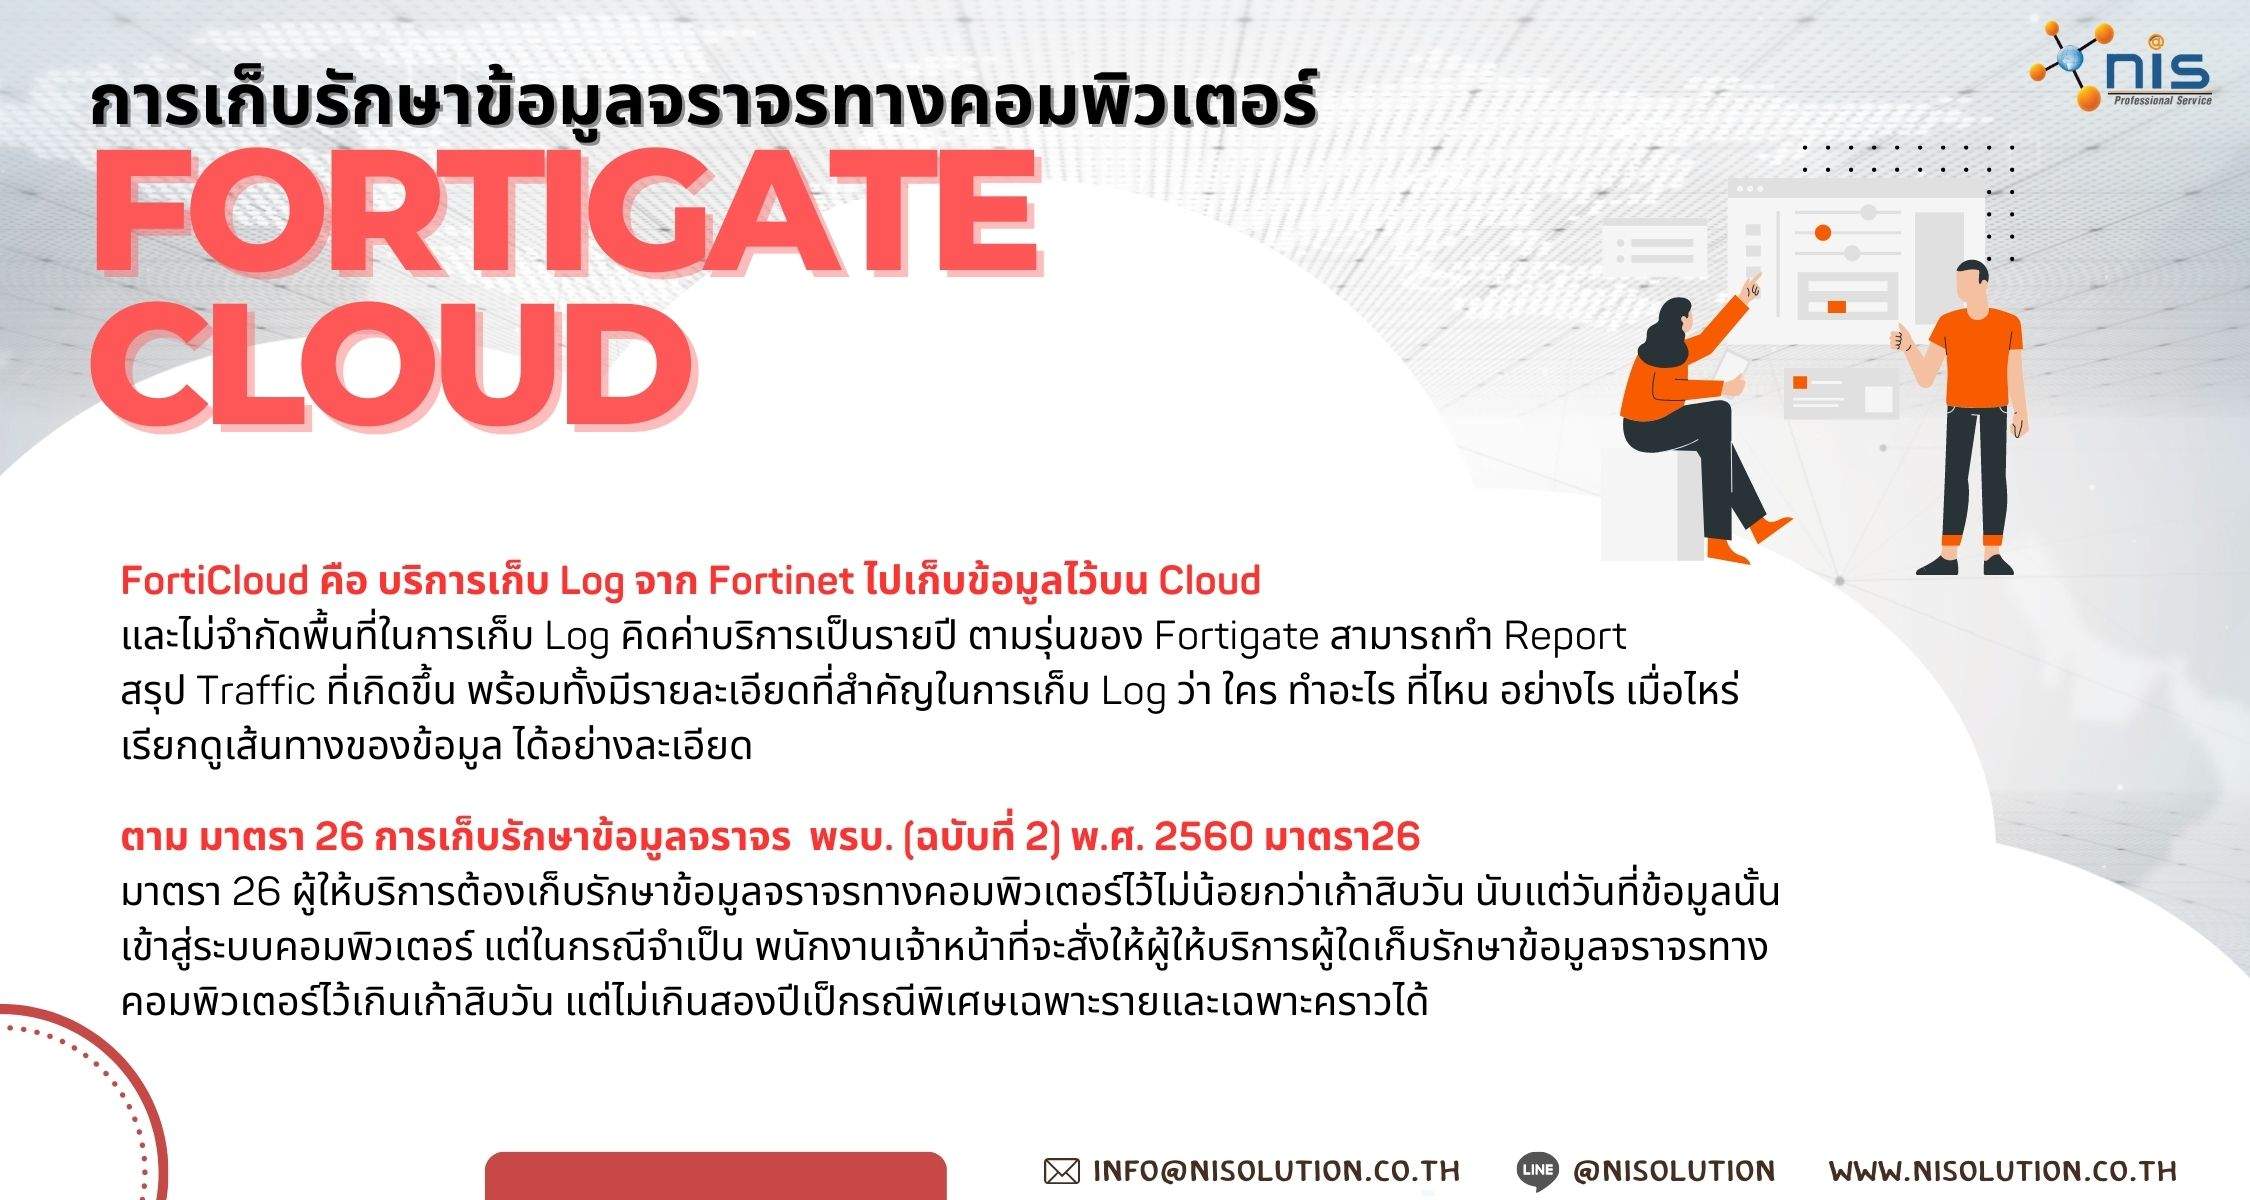 Forticloud, Fortigate cloud